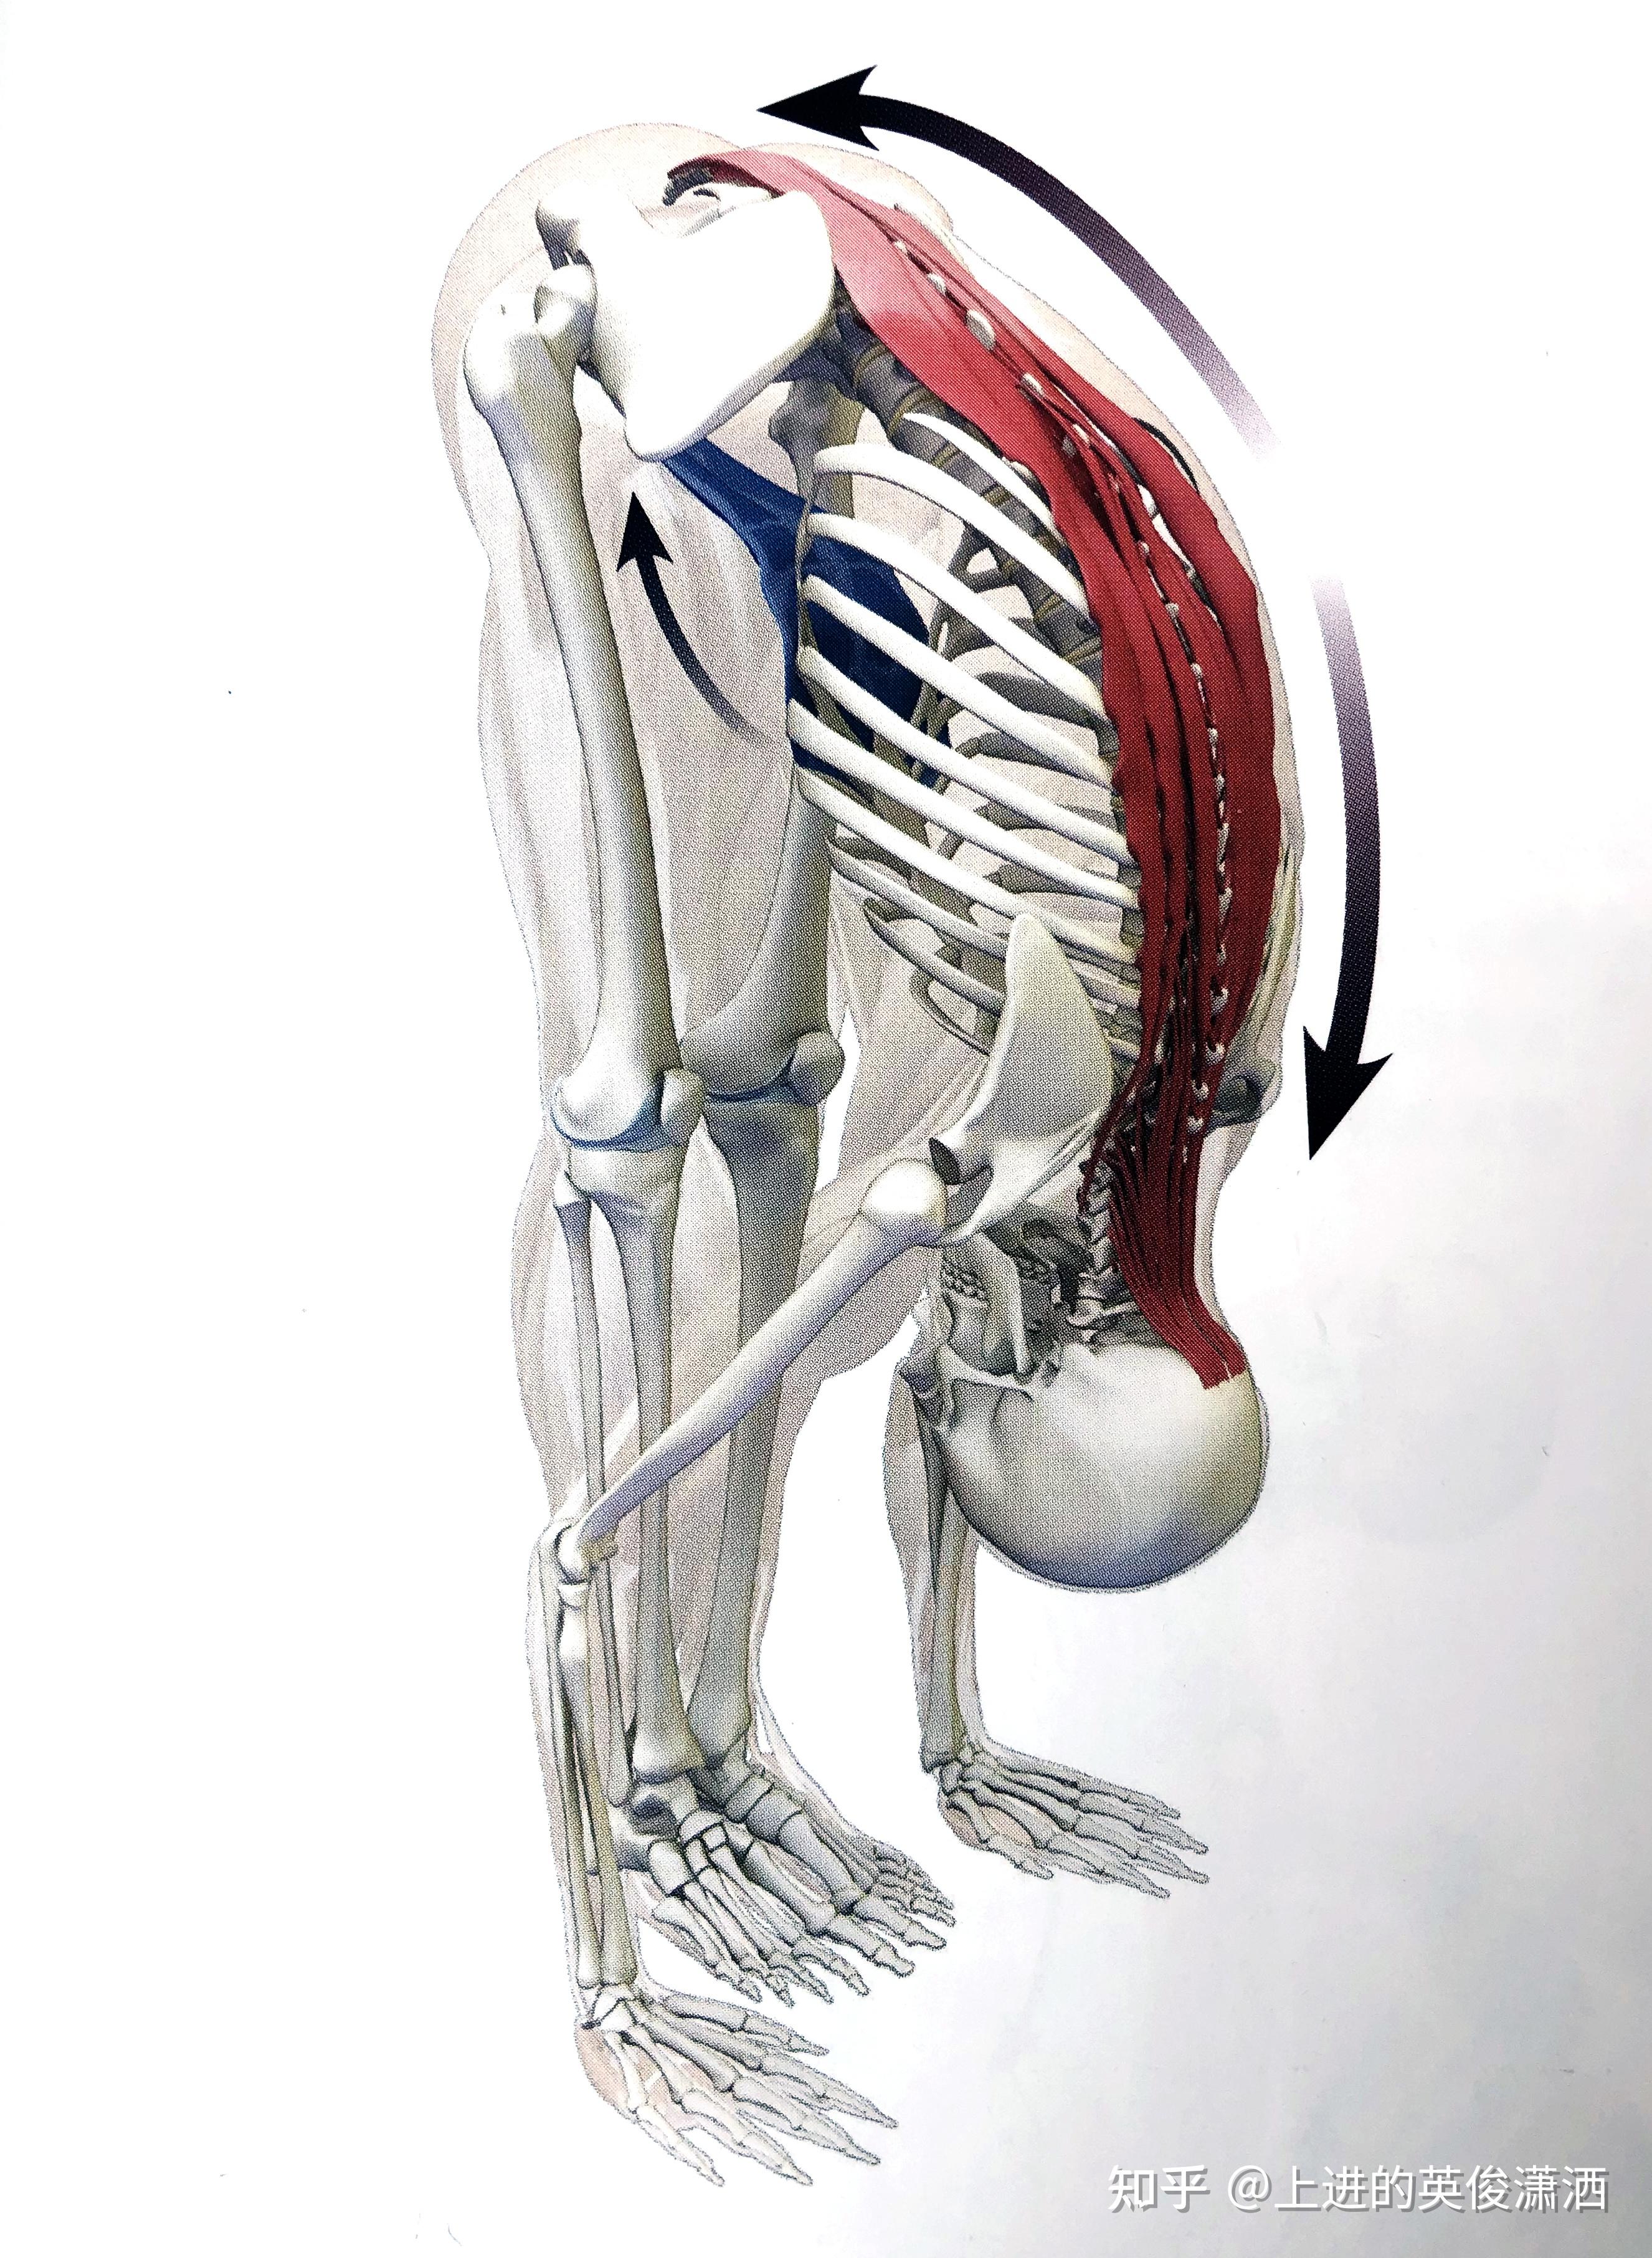 在进行前屈式时,启动腹部肌肉可以使背部拮抗肌群的拉伸更深入